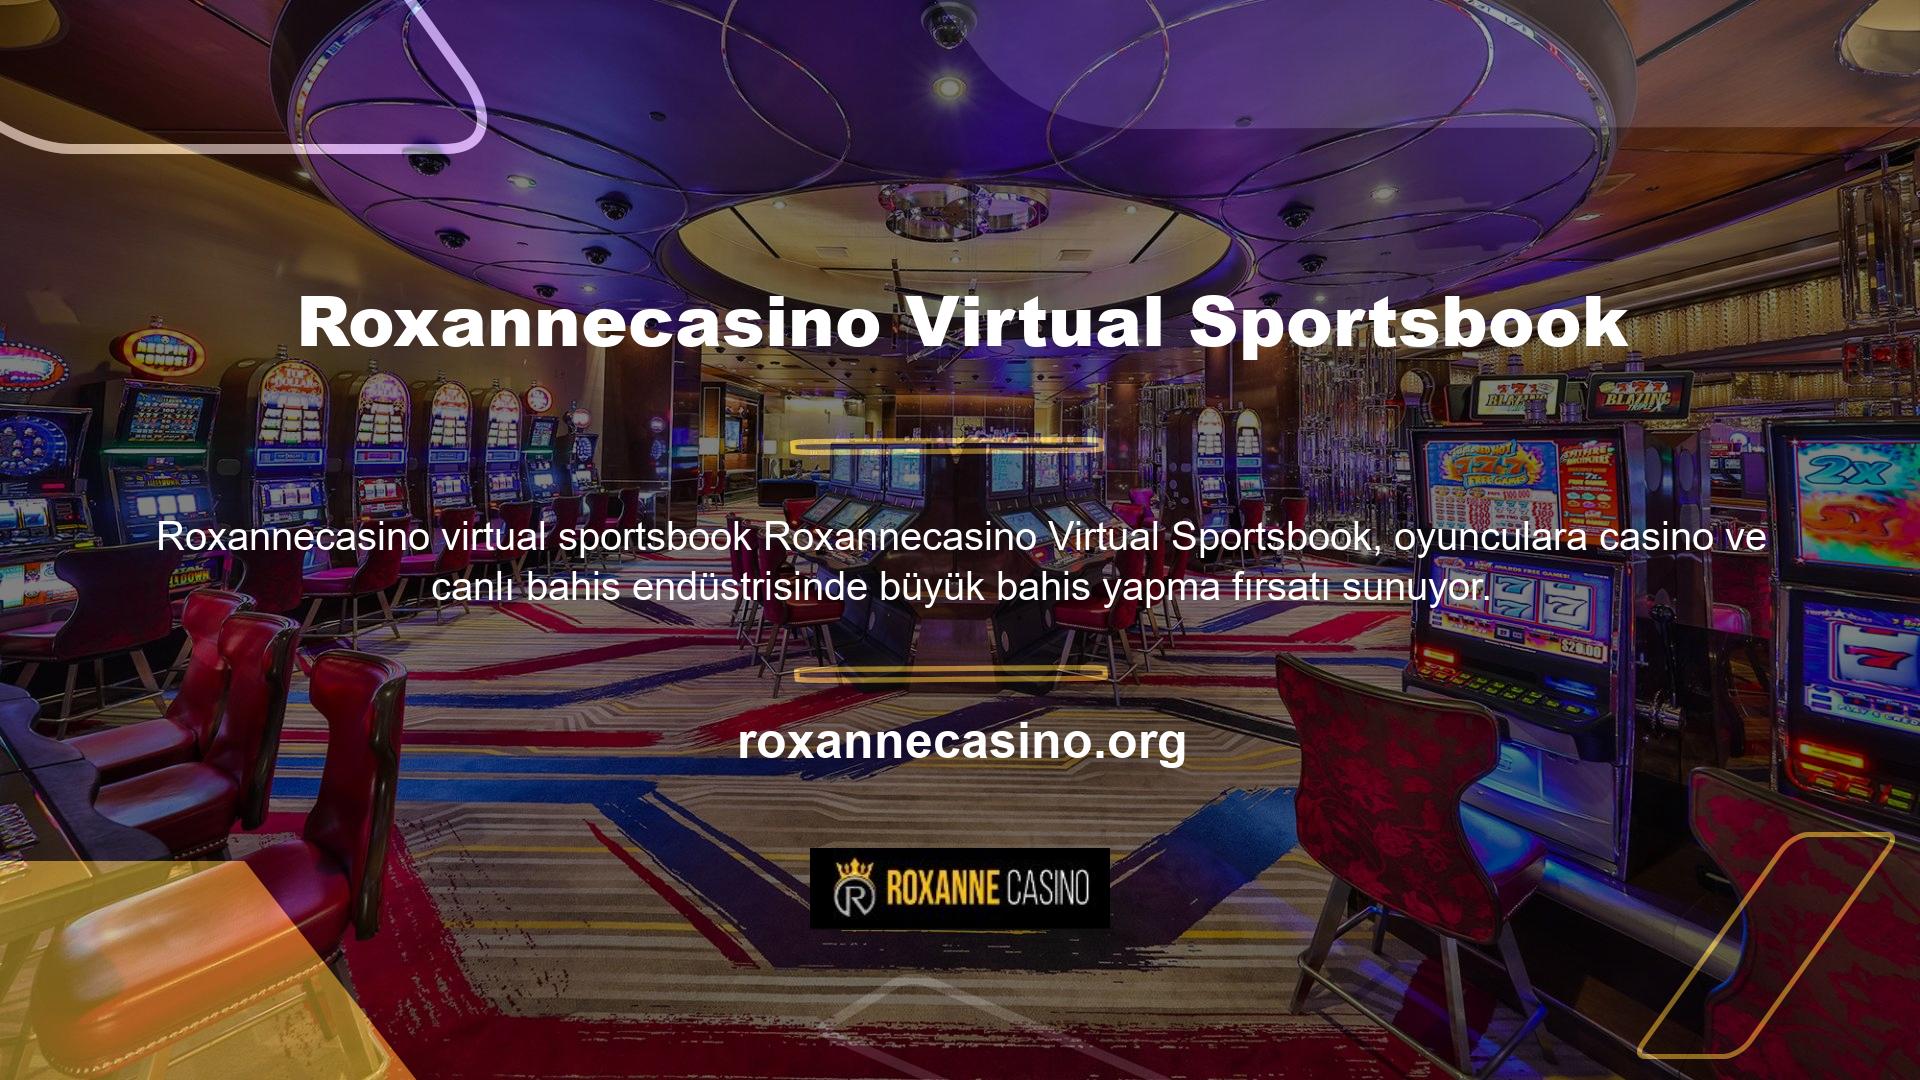 Roxannecasino Virtual Sportsbook, oyunculara oyun ve canlı bahis endüstrisinde büyük bahisler yapma fırsatı sunuyor